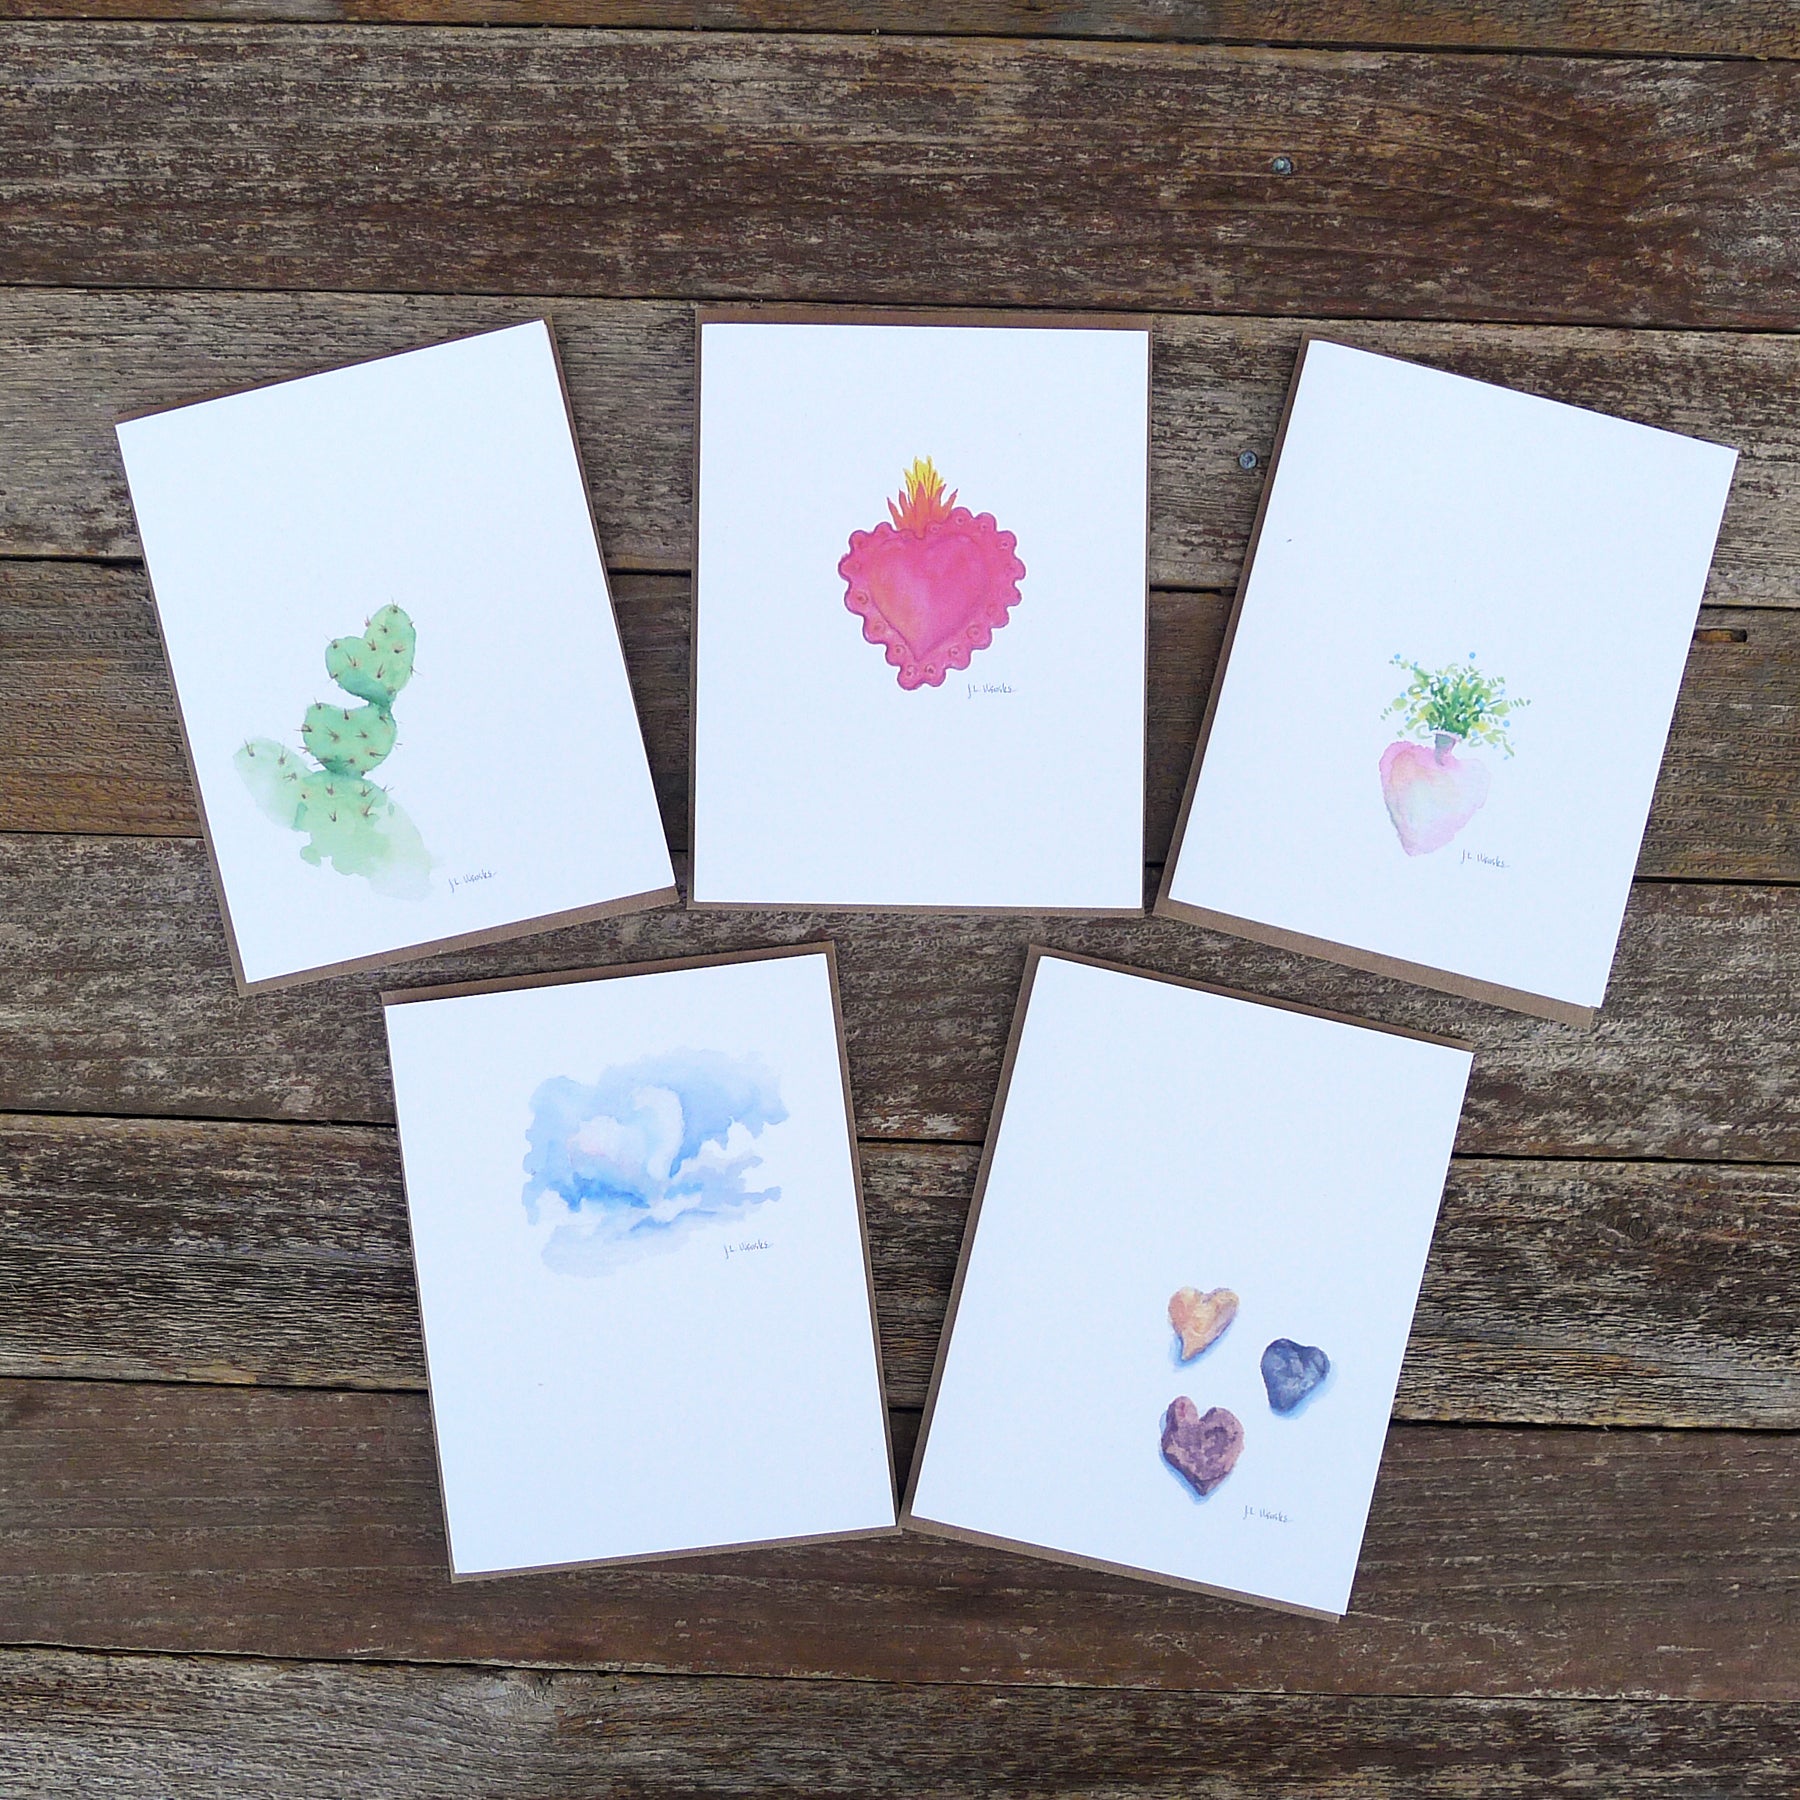 watercolor cards: hearts and love – kata golda handmade